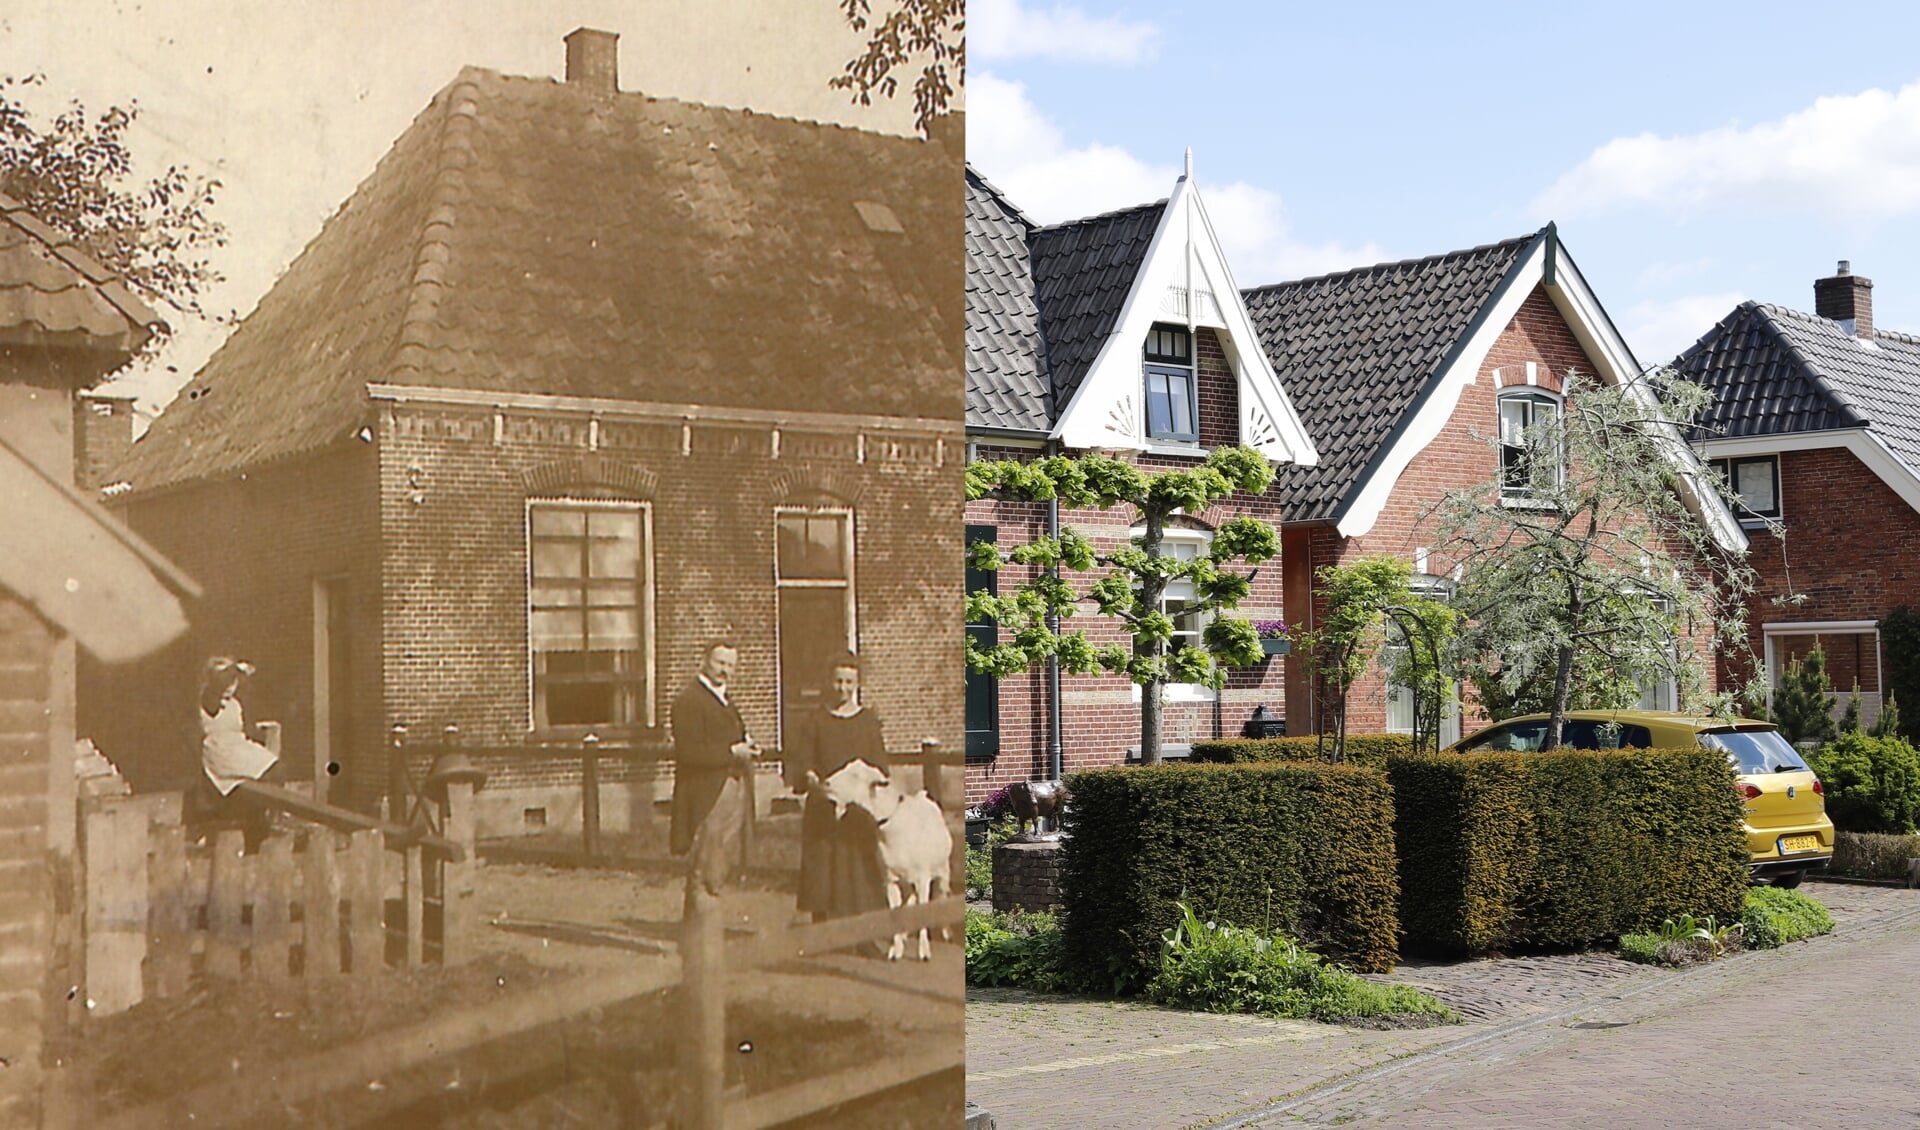 Een mooi voorbeeld uit de serie 'Hellendoorn vroeger en nu'. Van elke plek hebben ze een foto van vroeger, van nu en zo'n samengestelde foto.